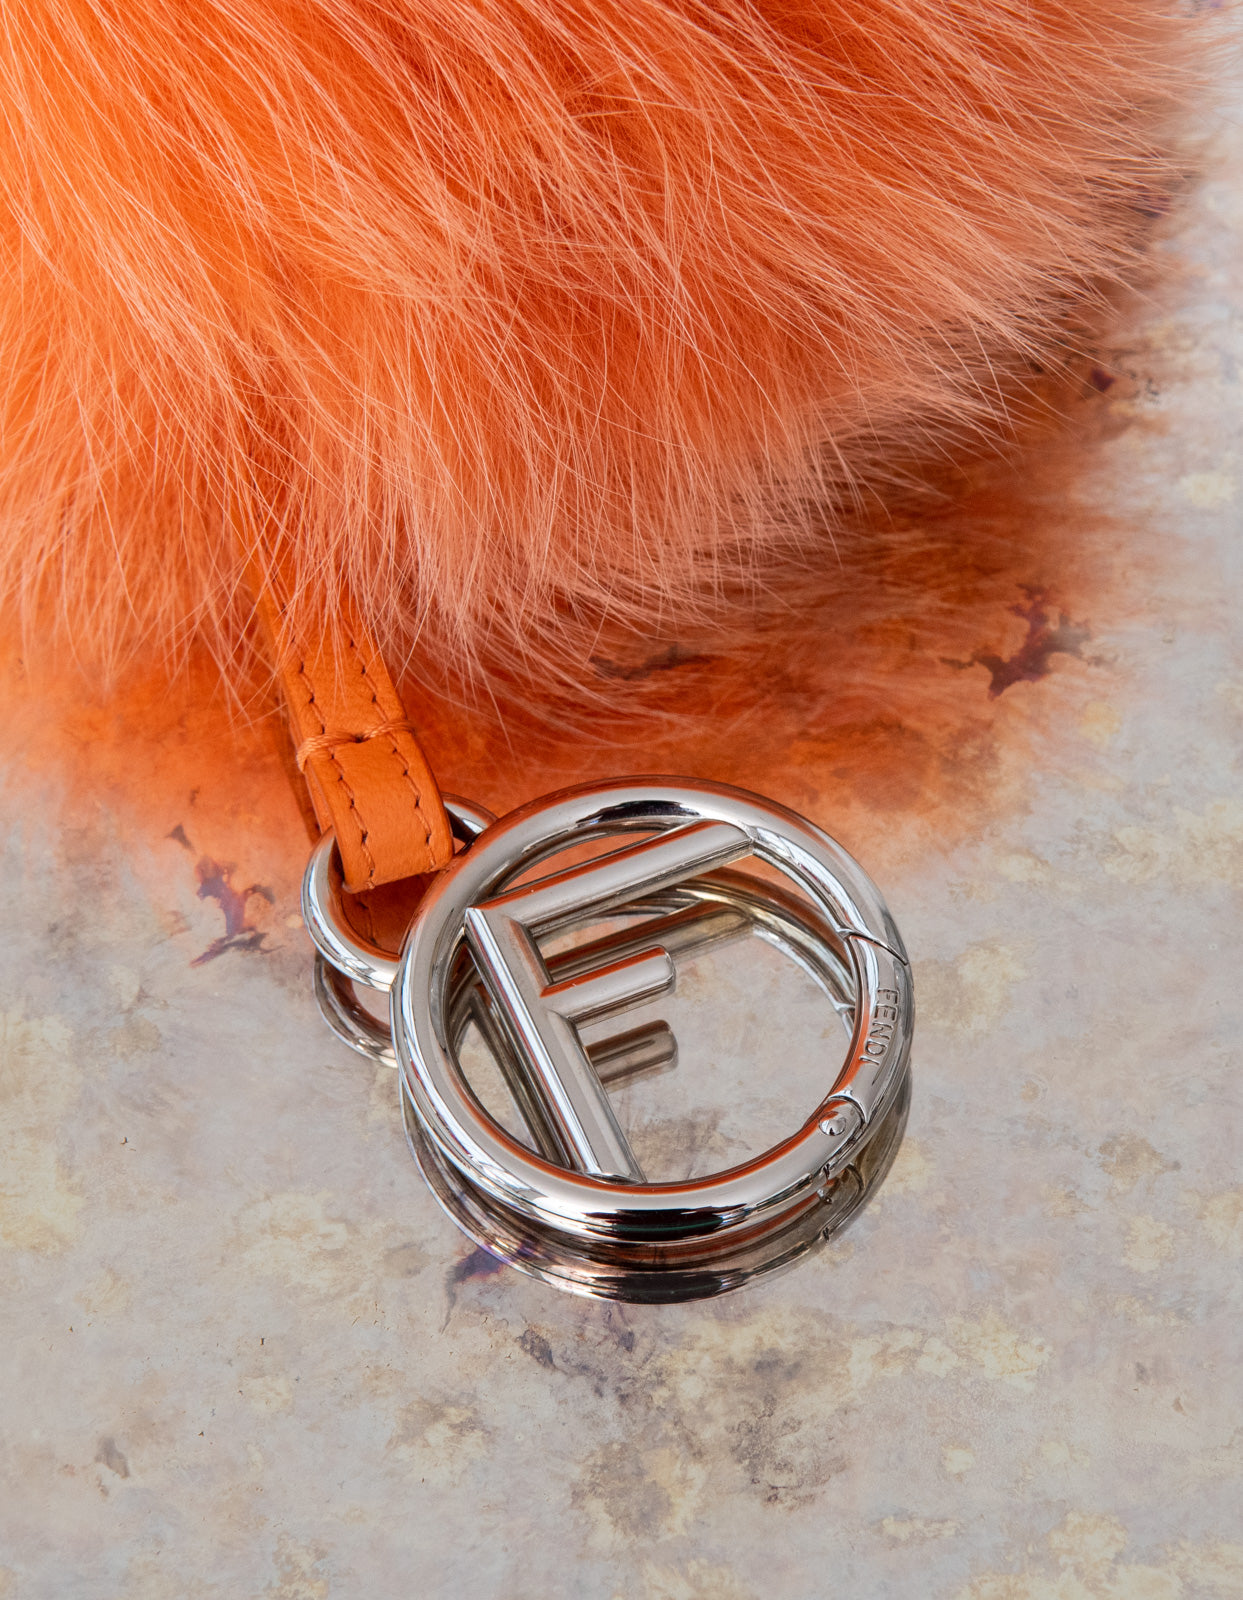 Fendi Orange Fur Pom Pom Key Ring - Image 3 of 4